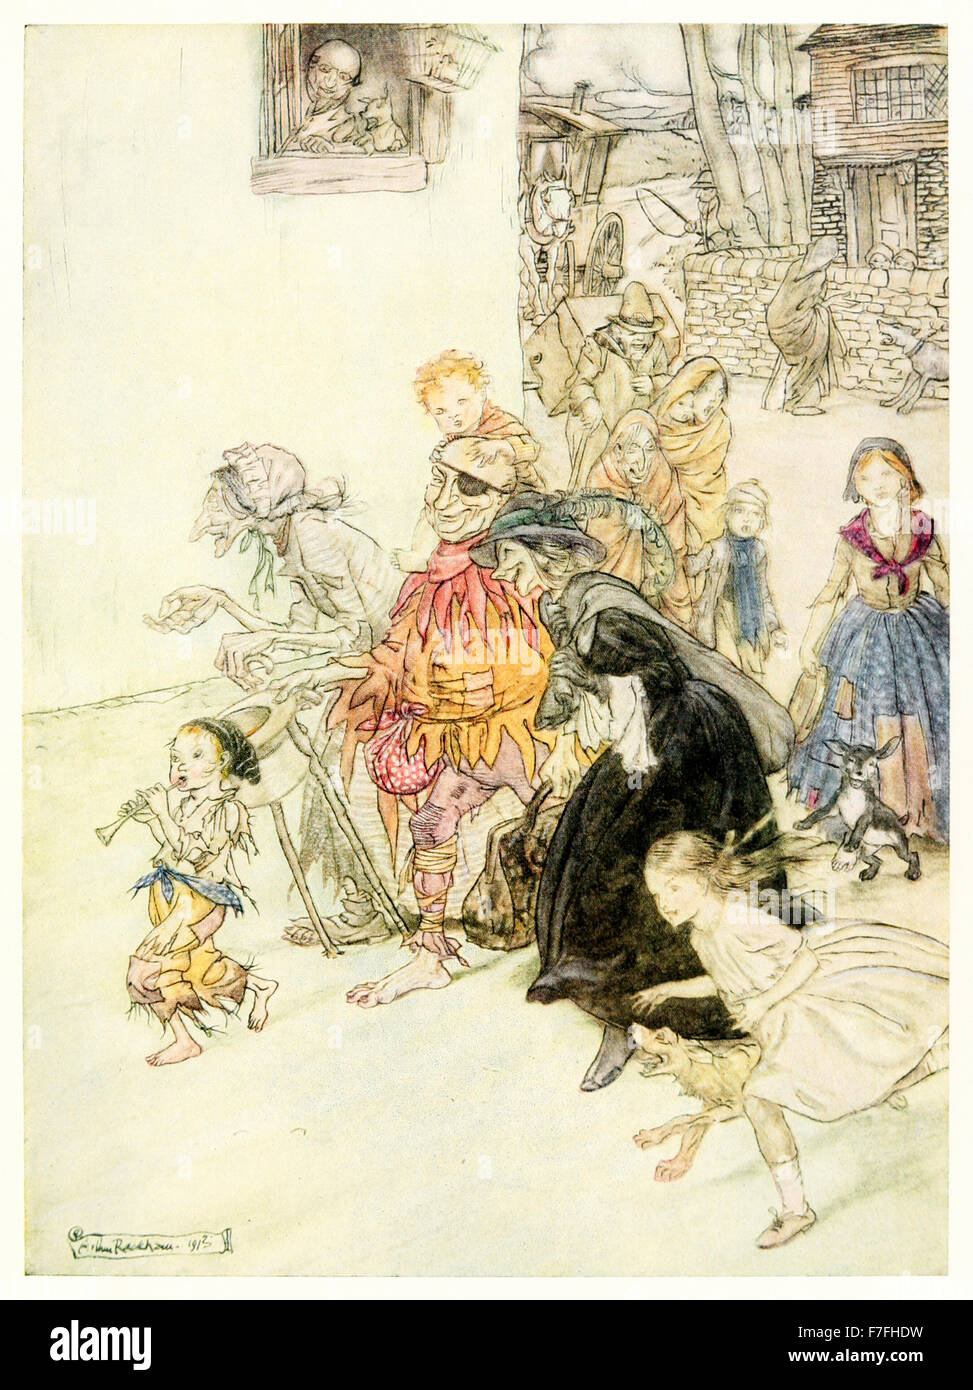 "Hark, Hark, il che fanno i cani abbaiare!' dal 'Maltri Oche - Il Vecchio Filastrocche' illustrazione di Arthur Rackham (1867-1939). Vedere la descrizione per maggiori informazioni. Foto Stock